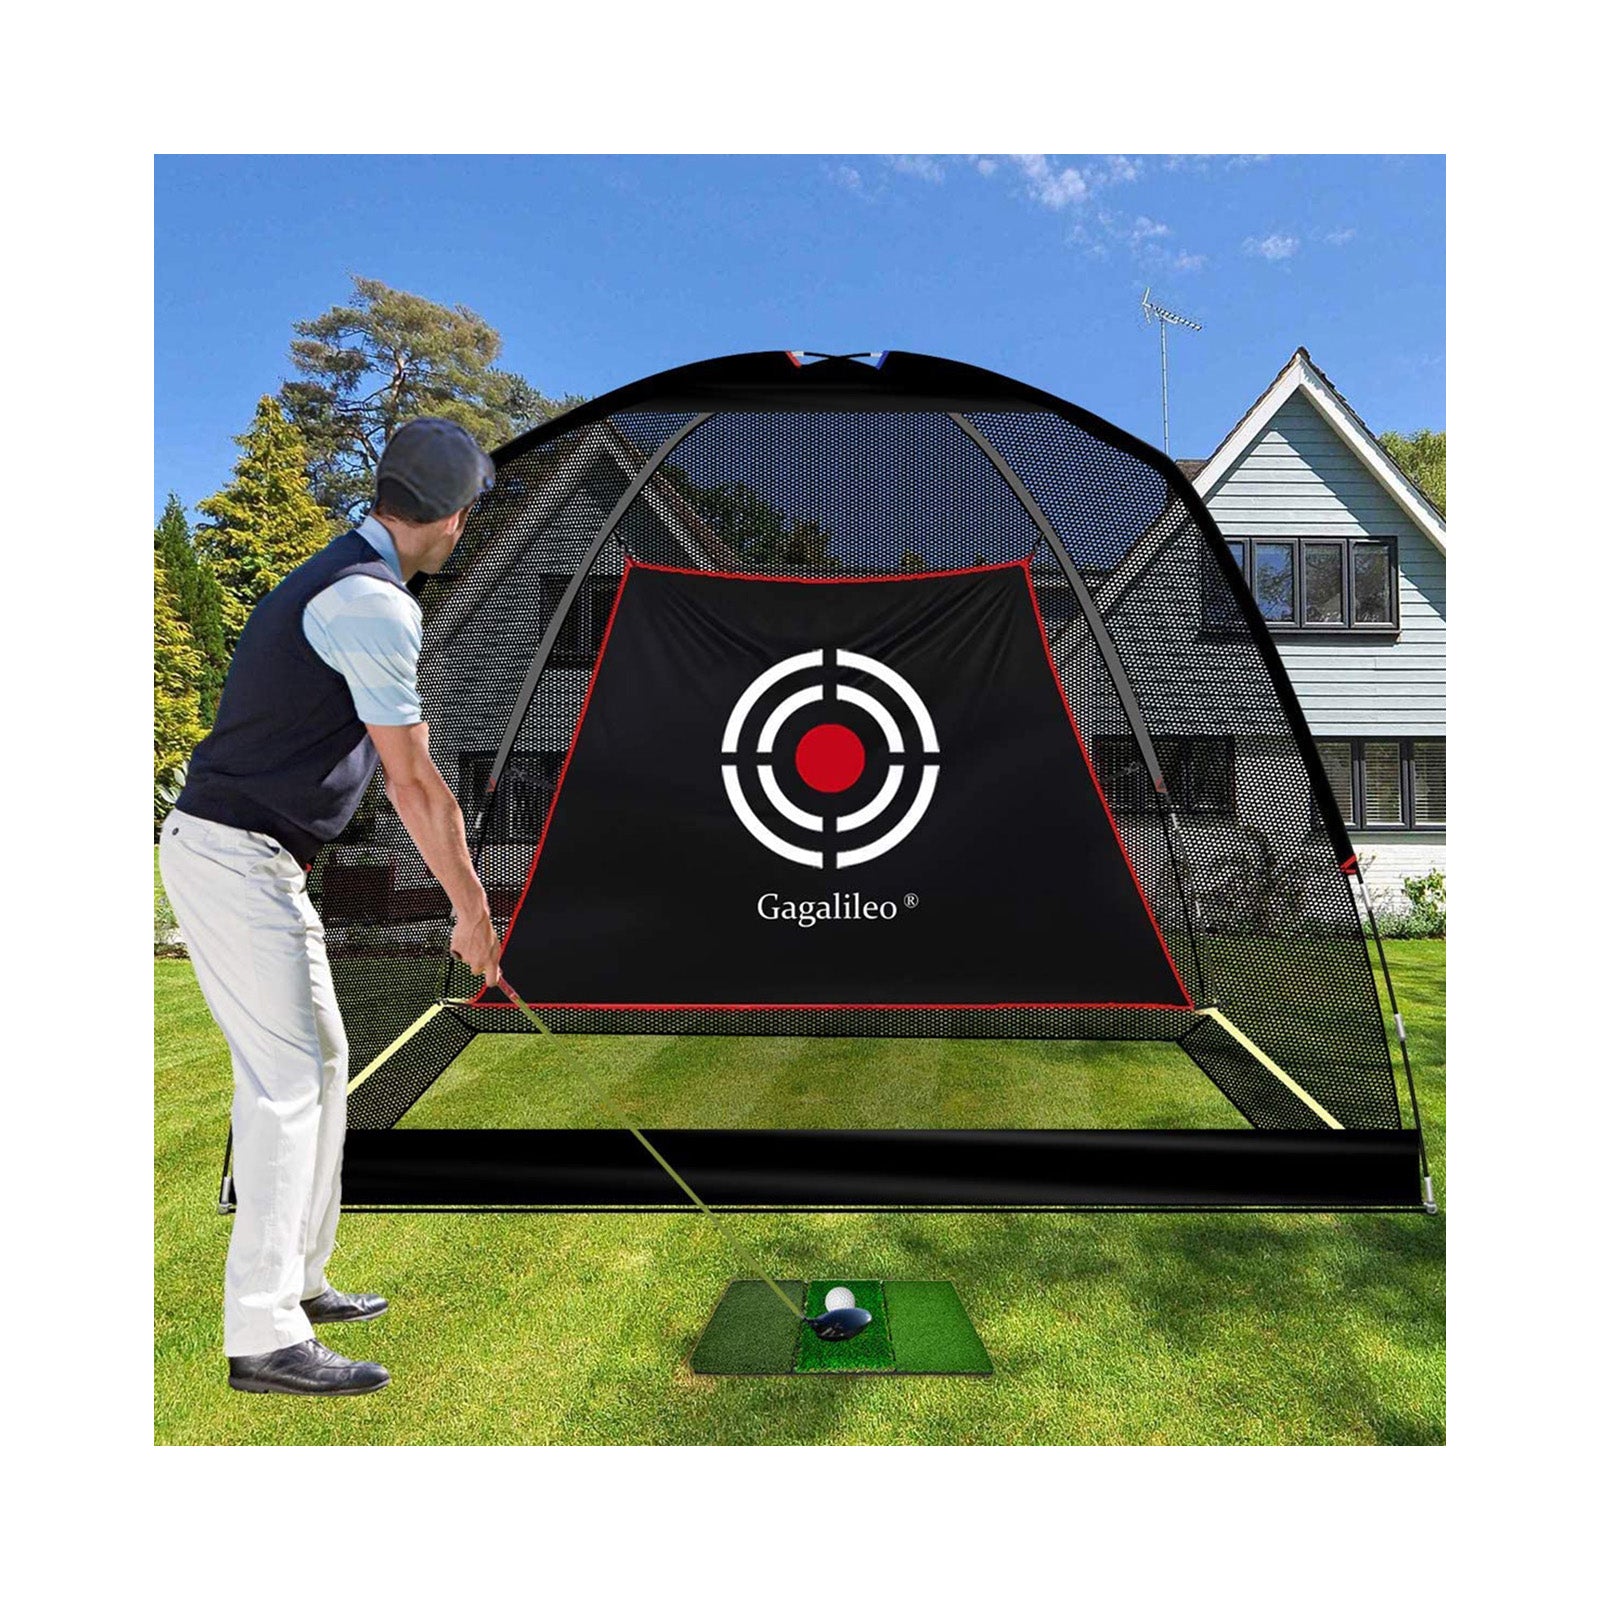 Red de golf deportiva Galileo para conducir en el patio trasero Red de practica de golf 10'X 6.5'X 6' Red de golf para uso en interiores con objetivo y bolsa de transporte